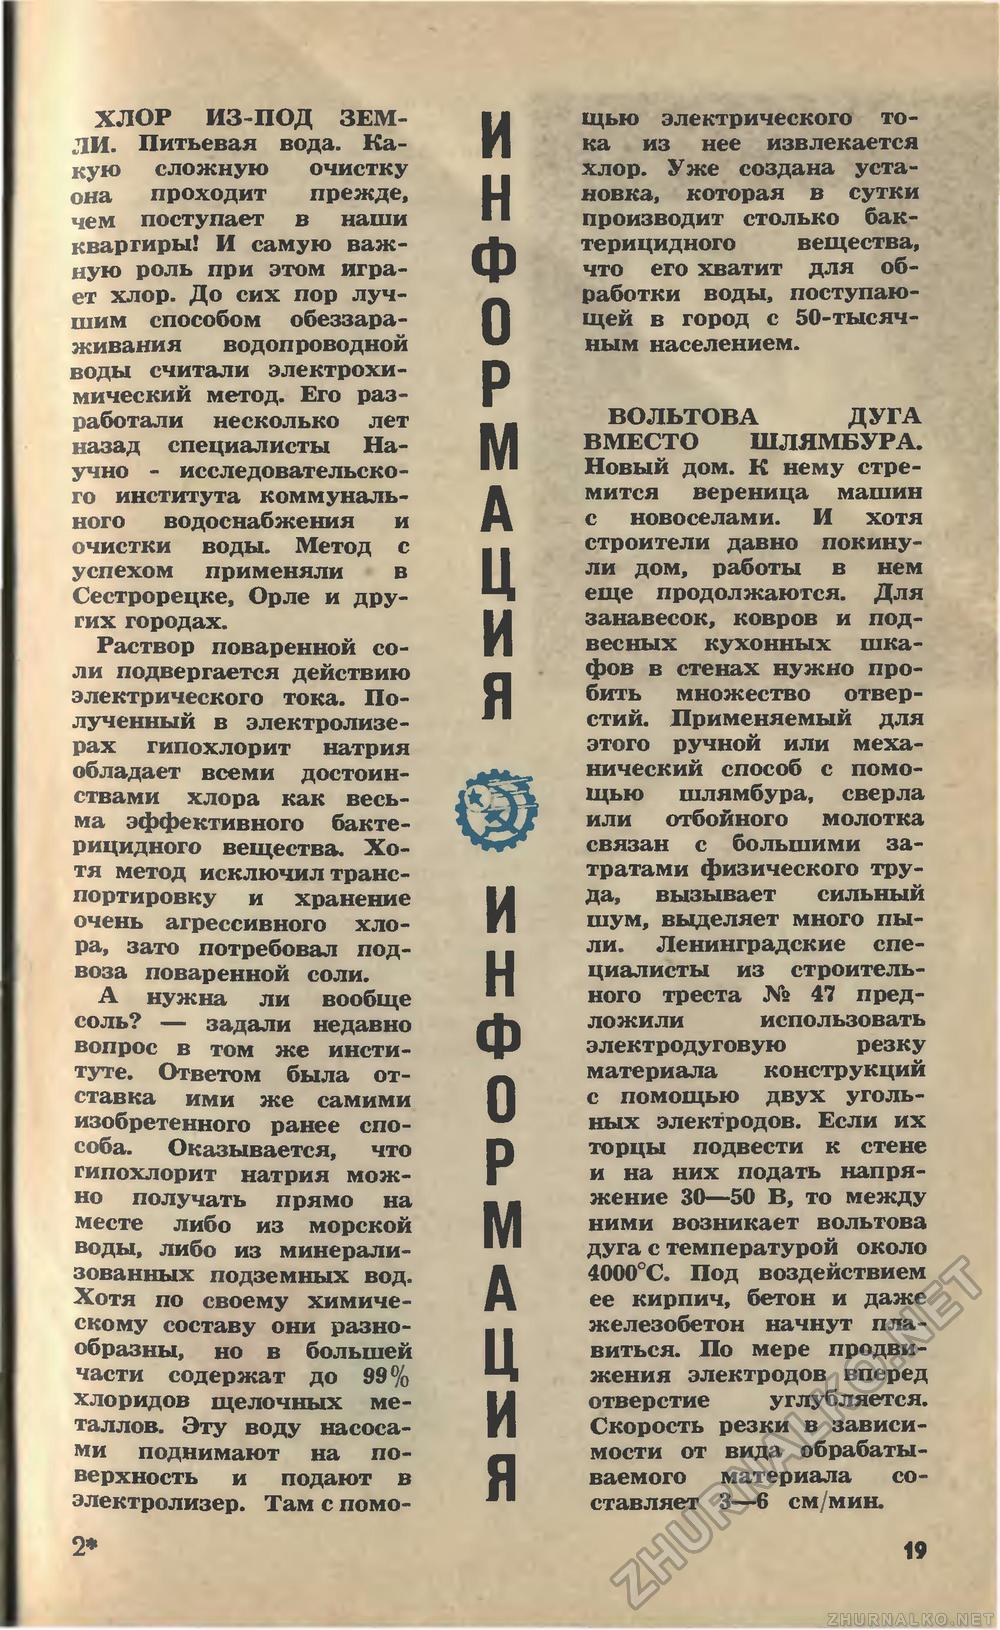   1974-09,  21